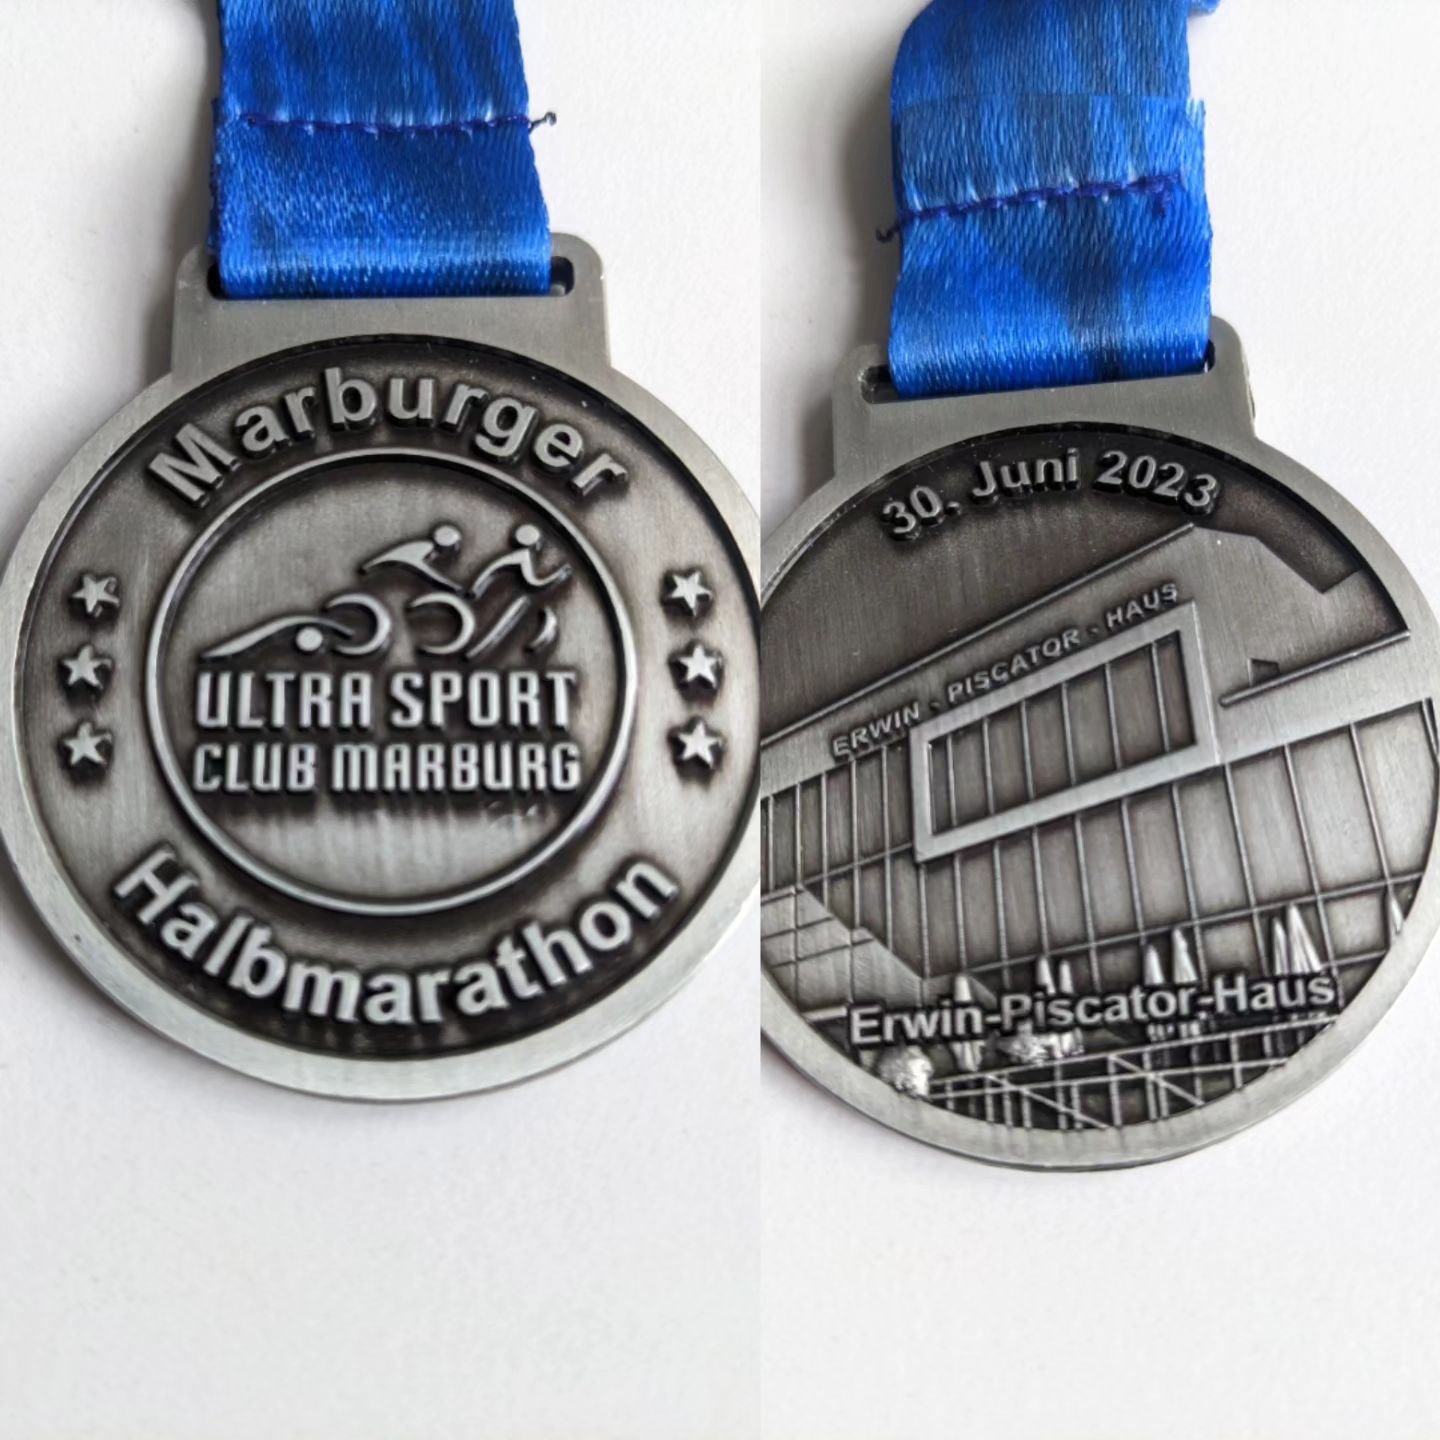 Die Medaille 🏅 ist angekommen  vom Marburger Nachtmarathon. Es waren am Ende mehr Teilnehmer als Medaillen. Daher kam meine per Post. 